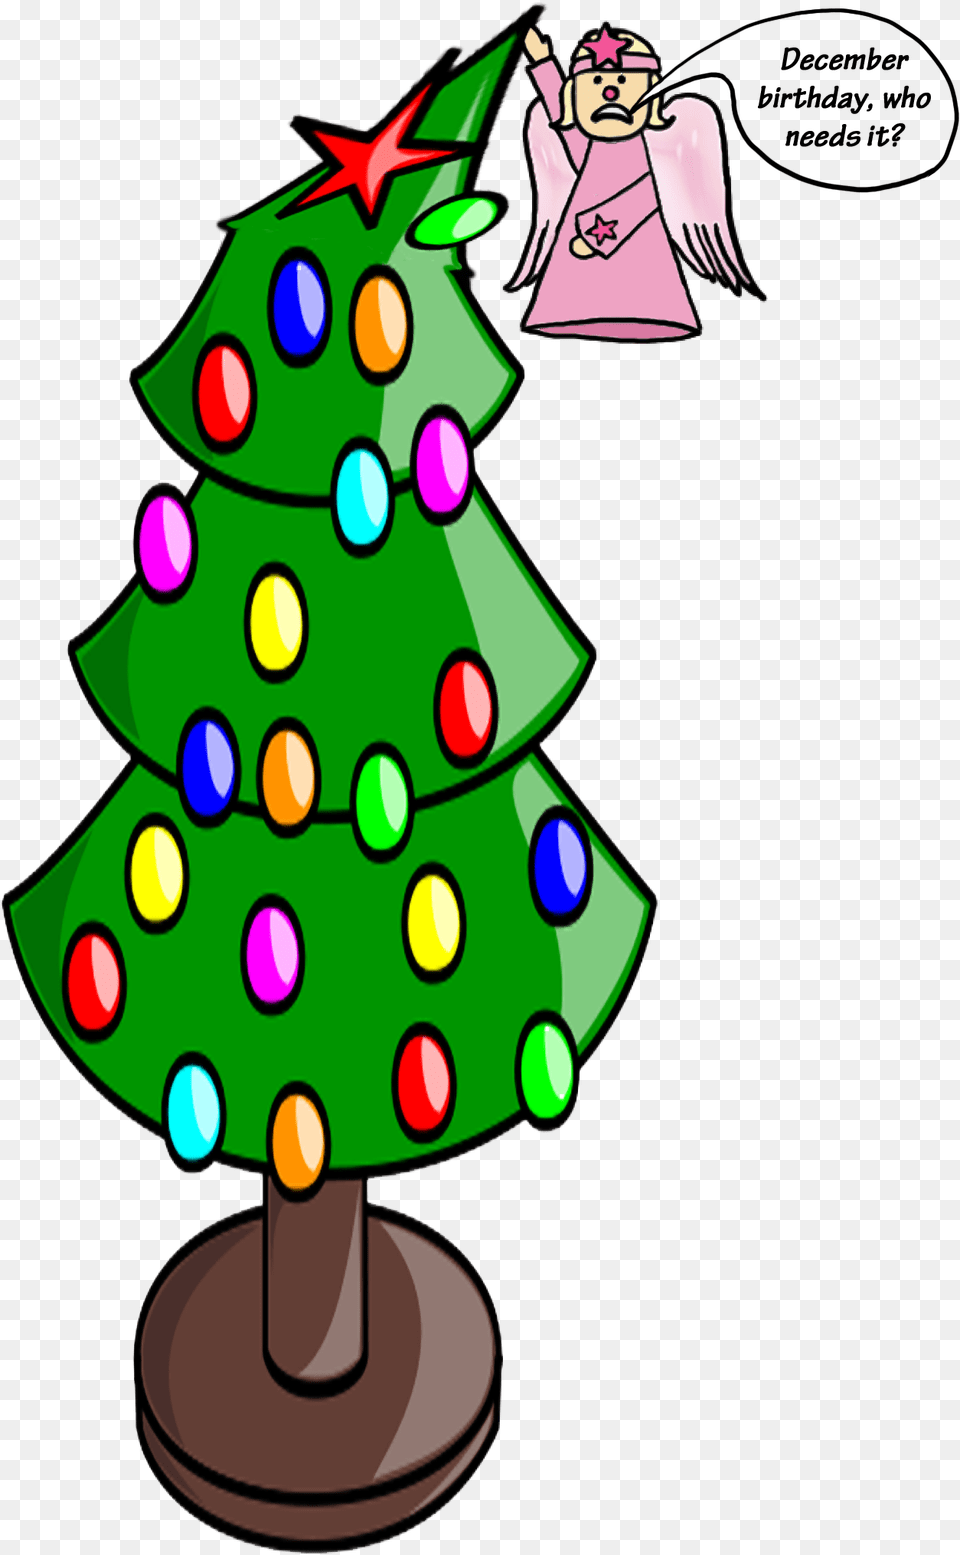 A Techiteers Christmas Carol Christmas Tree, Christmas Decorations, Festival, Christmas Tree, Person Png